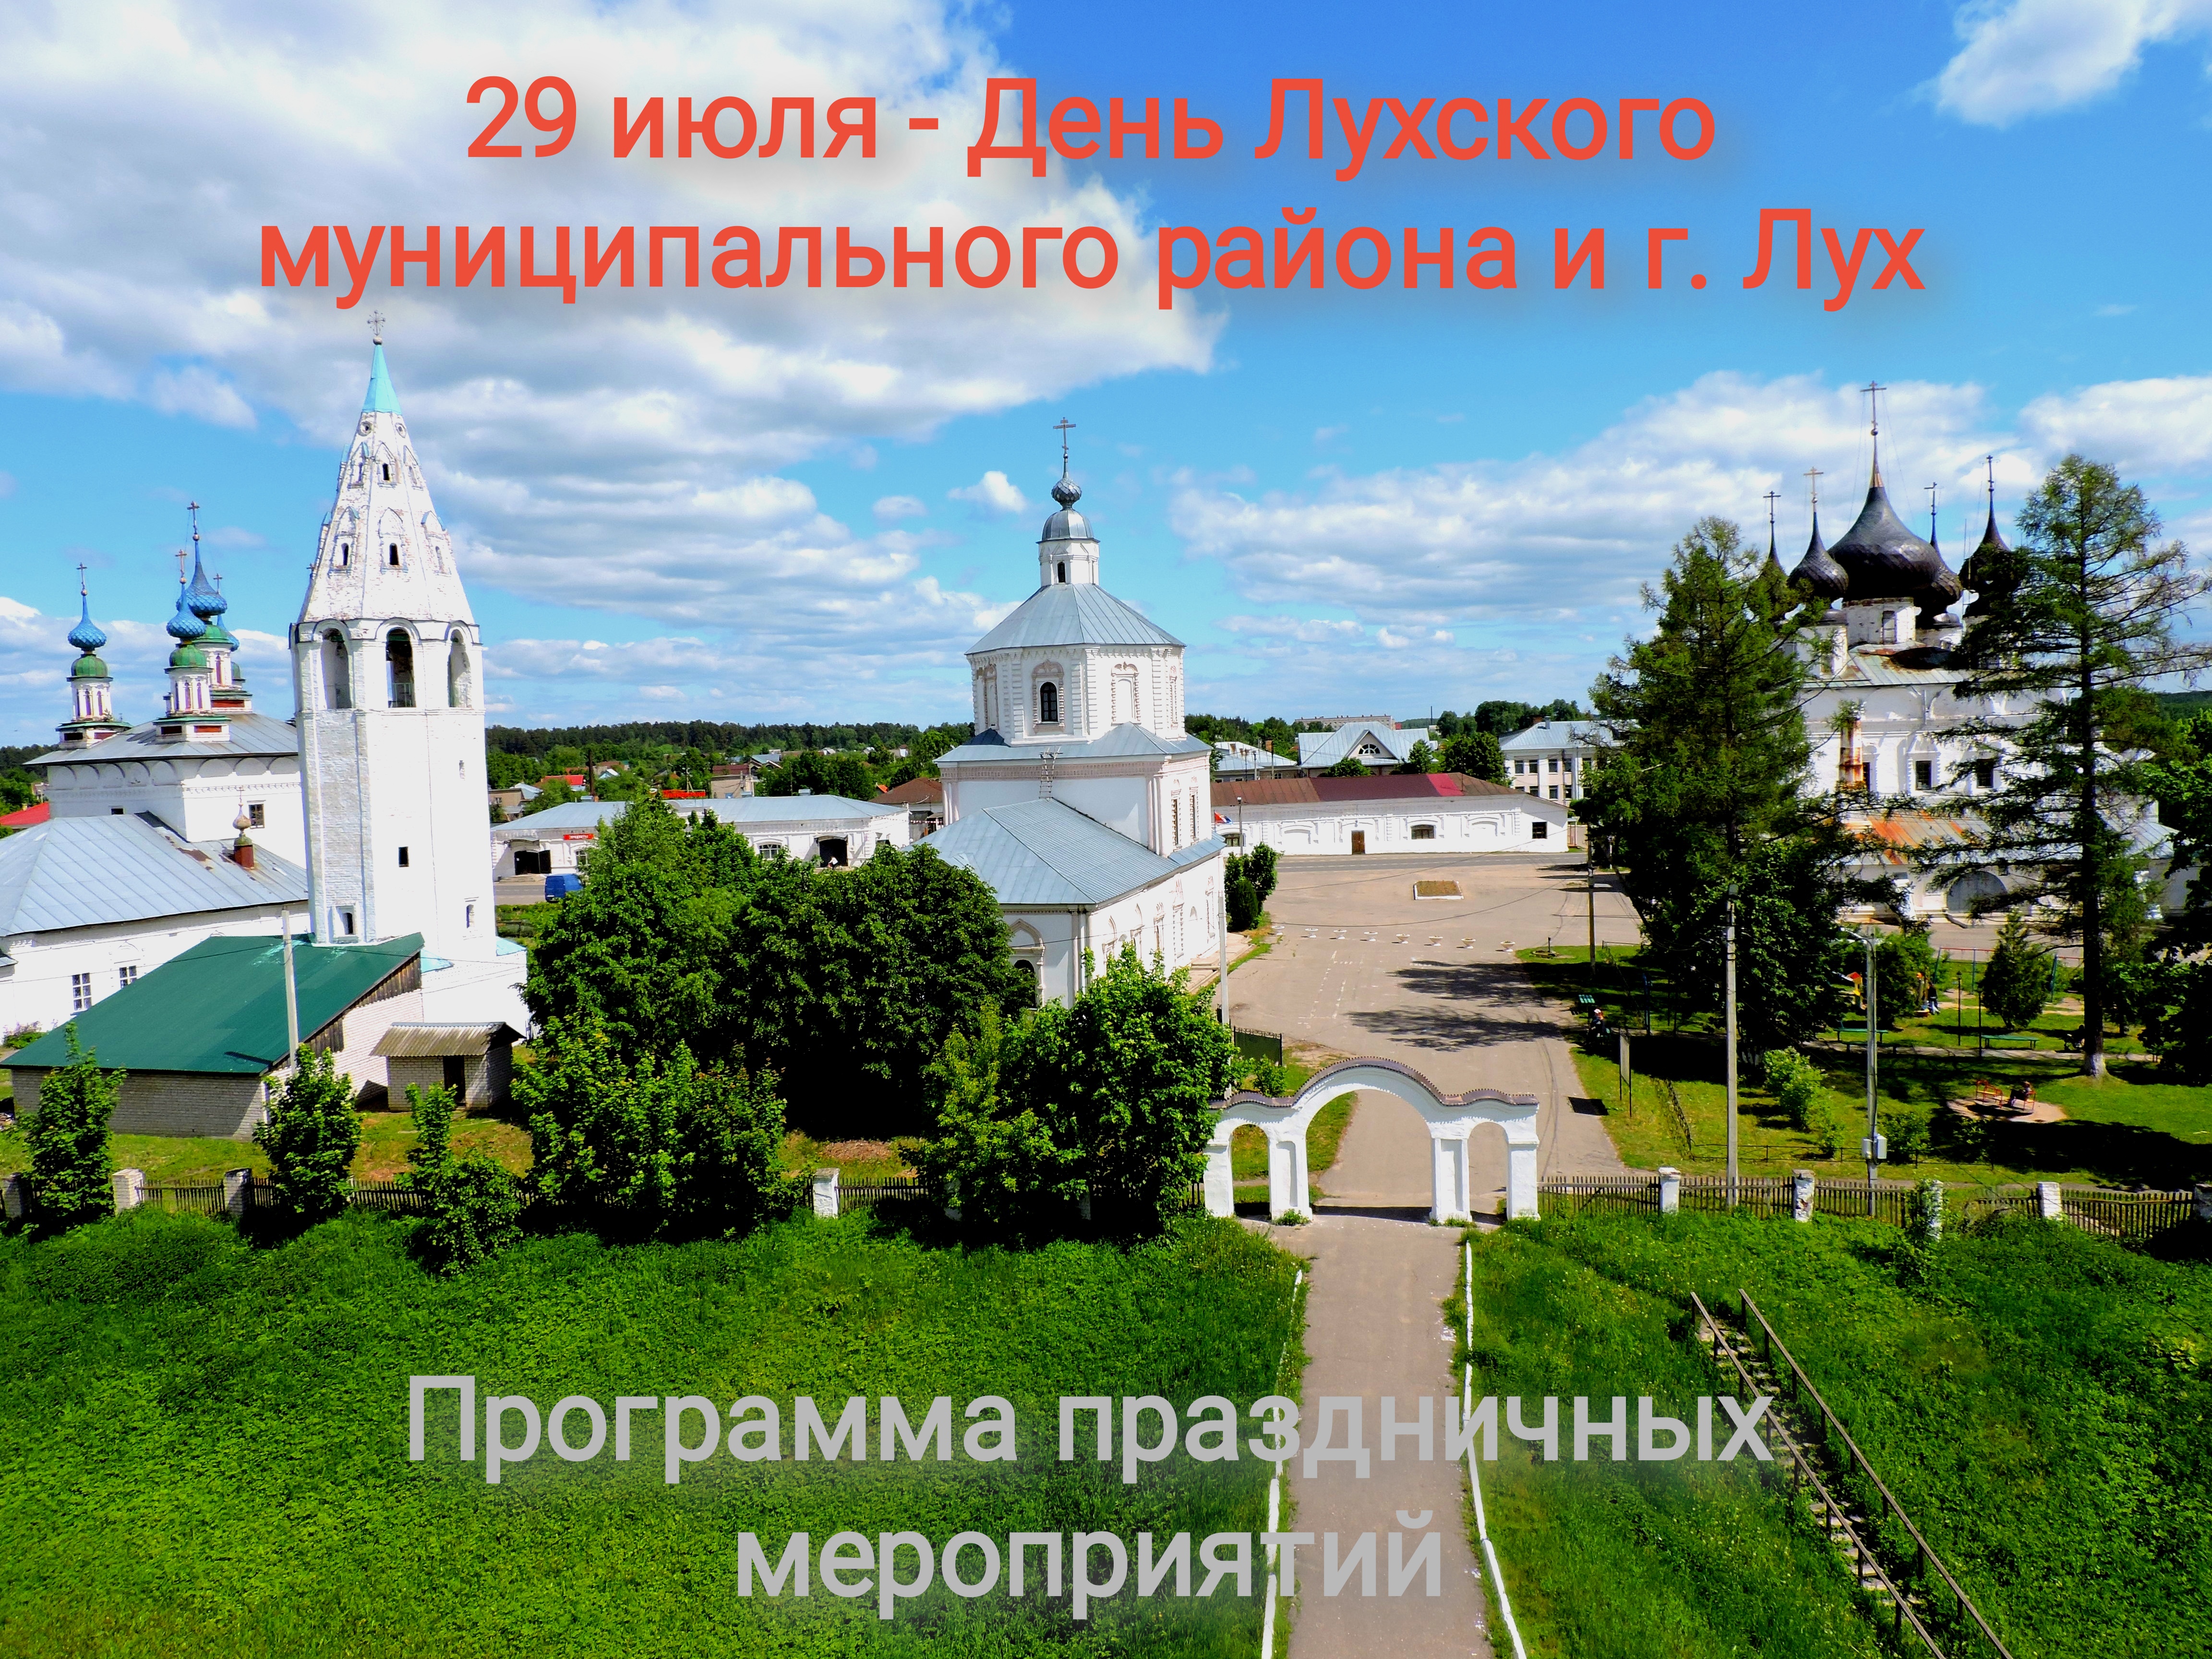 29 июля - День Лухского муниципального района и г.Лух.